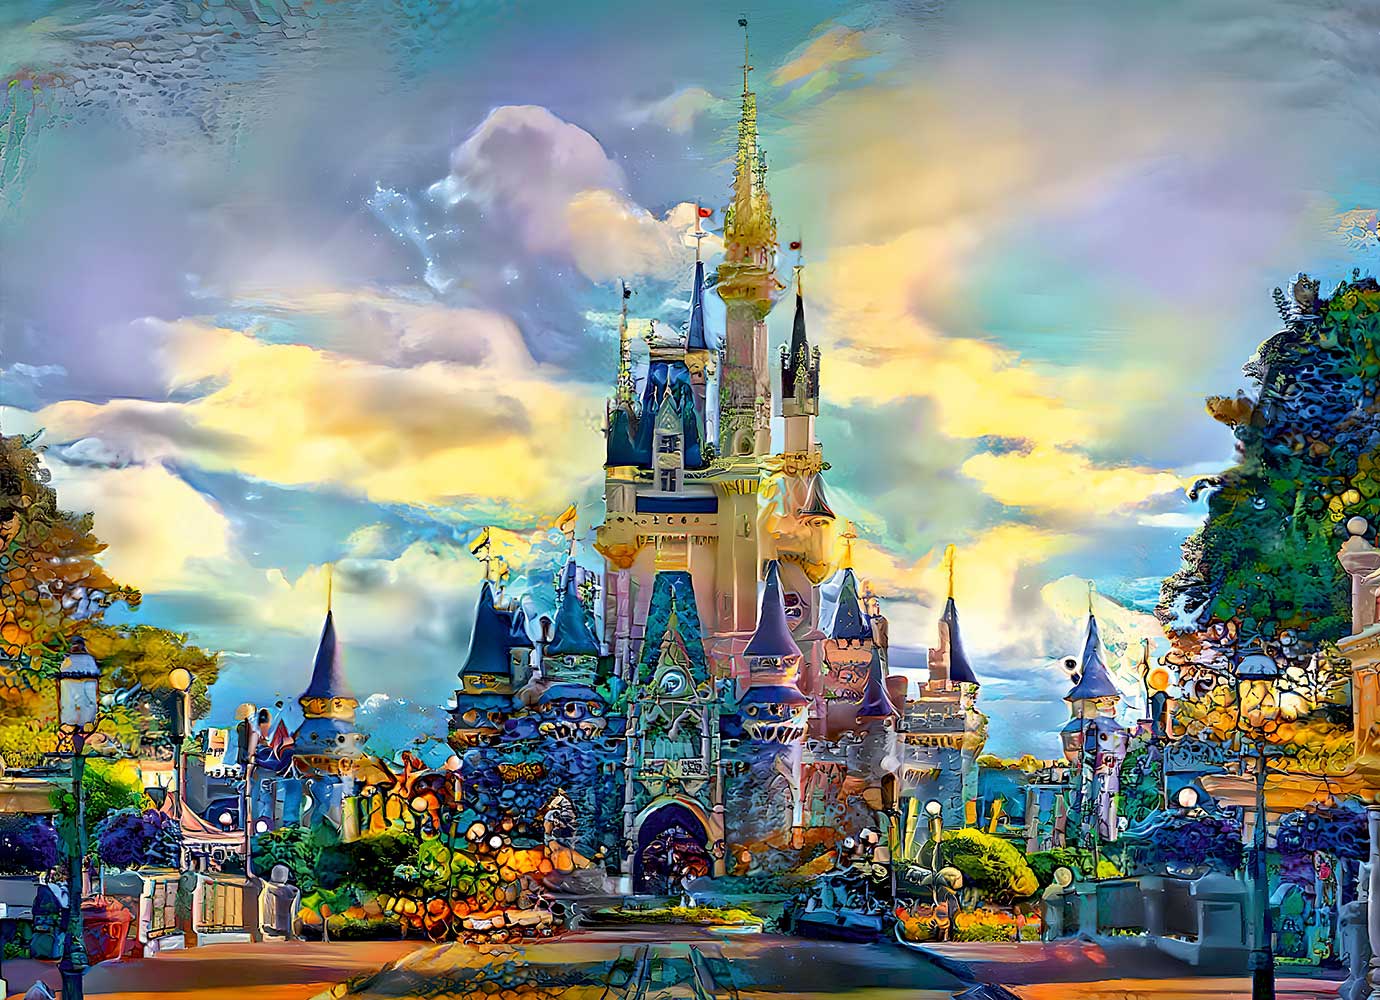 Puzzle Bluebird Castillo Disney World Orlando de 1000 Piezas